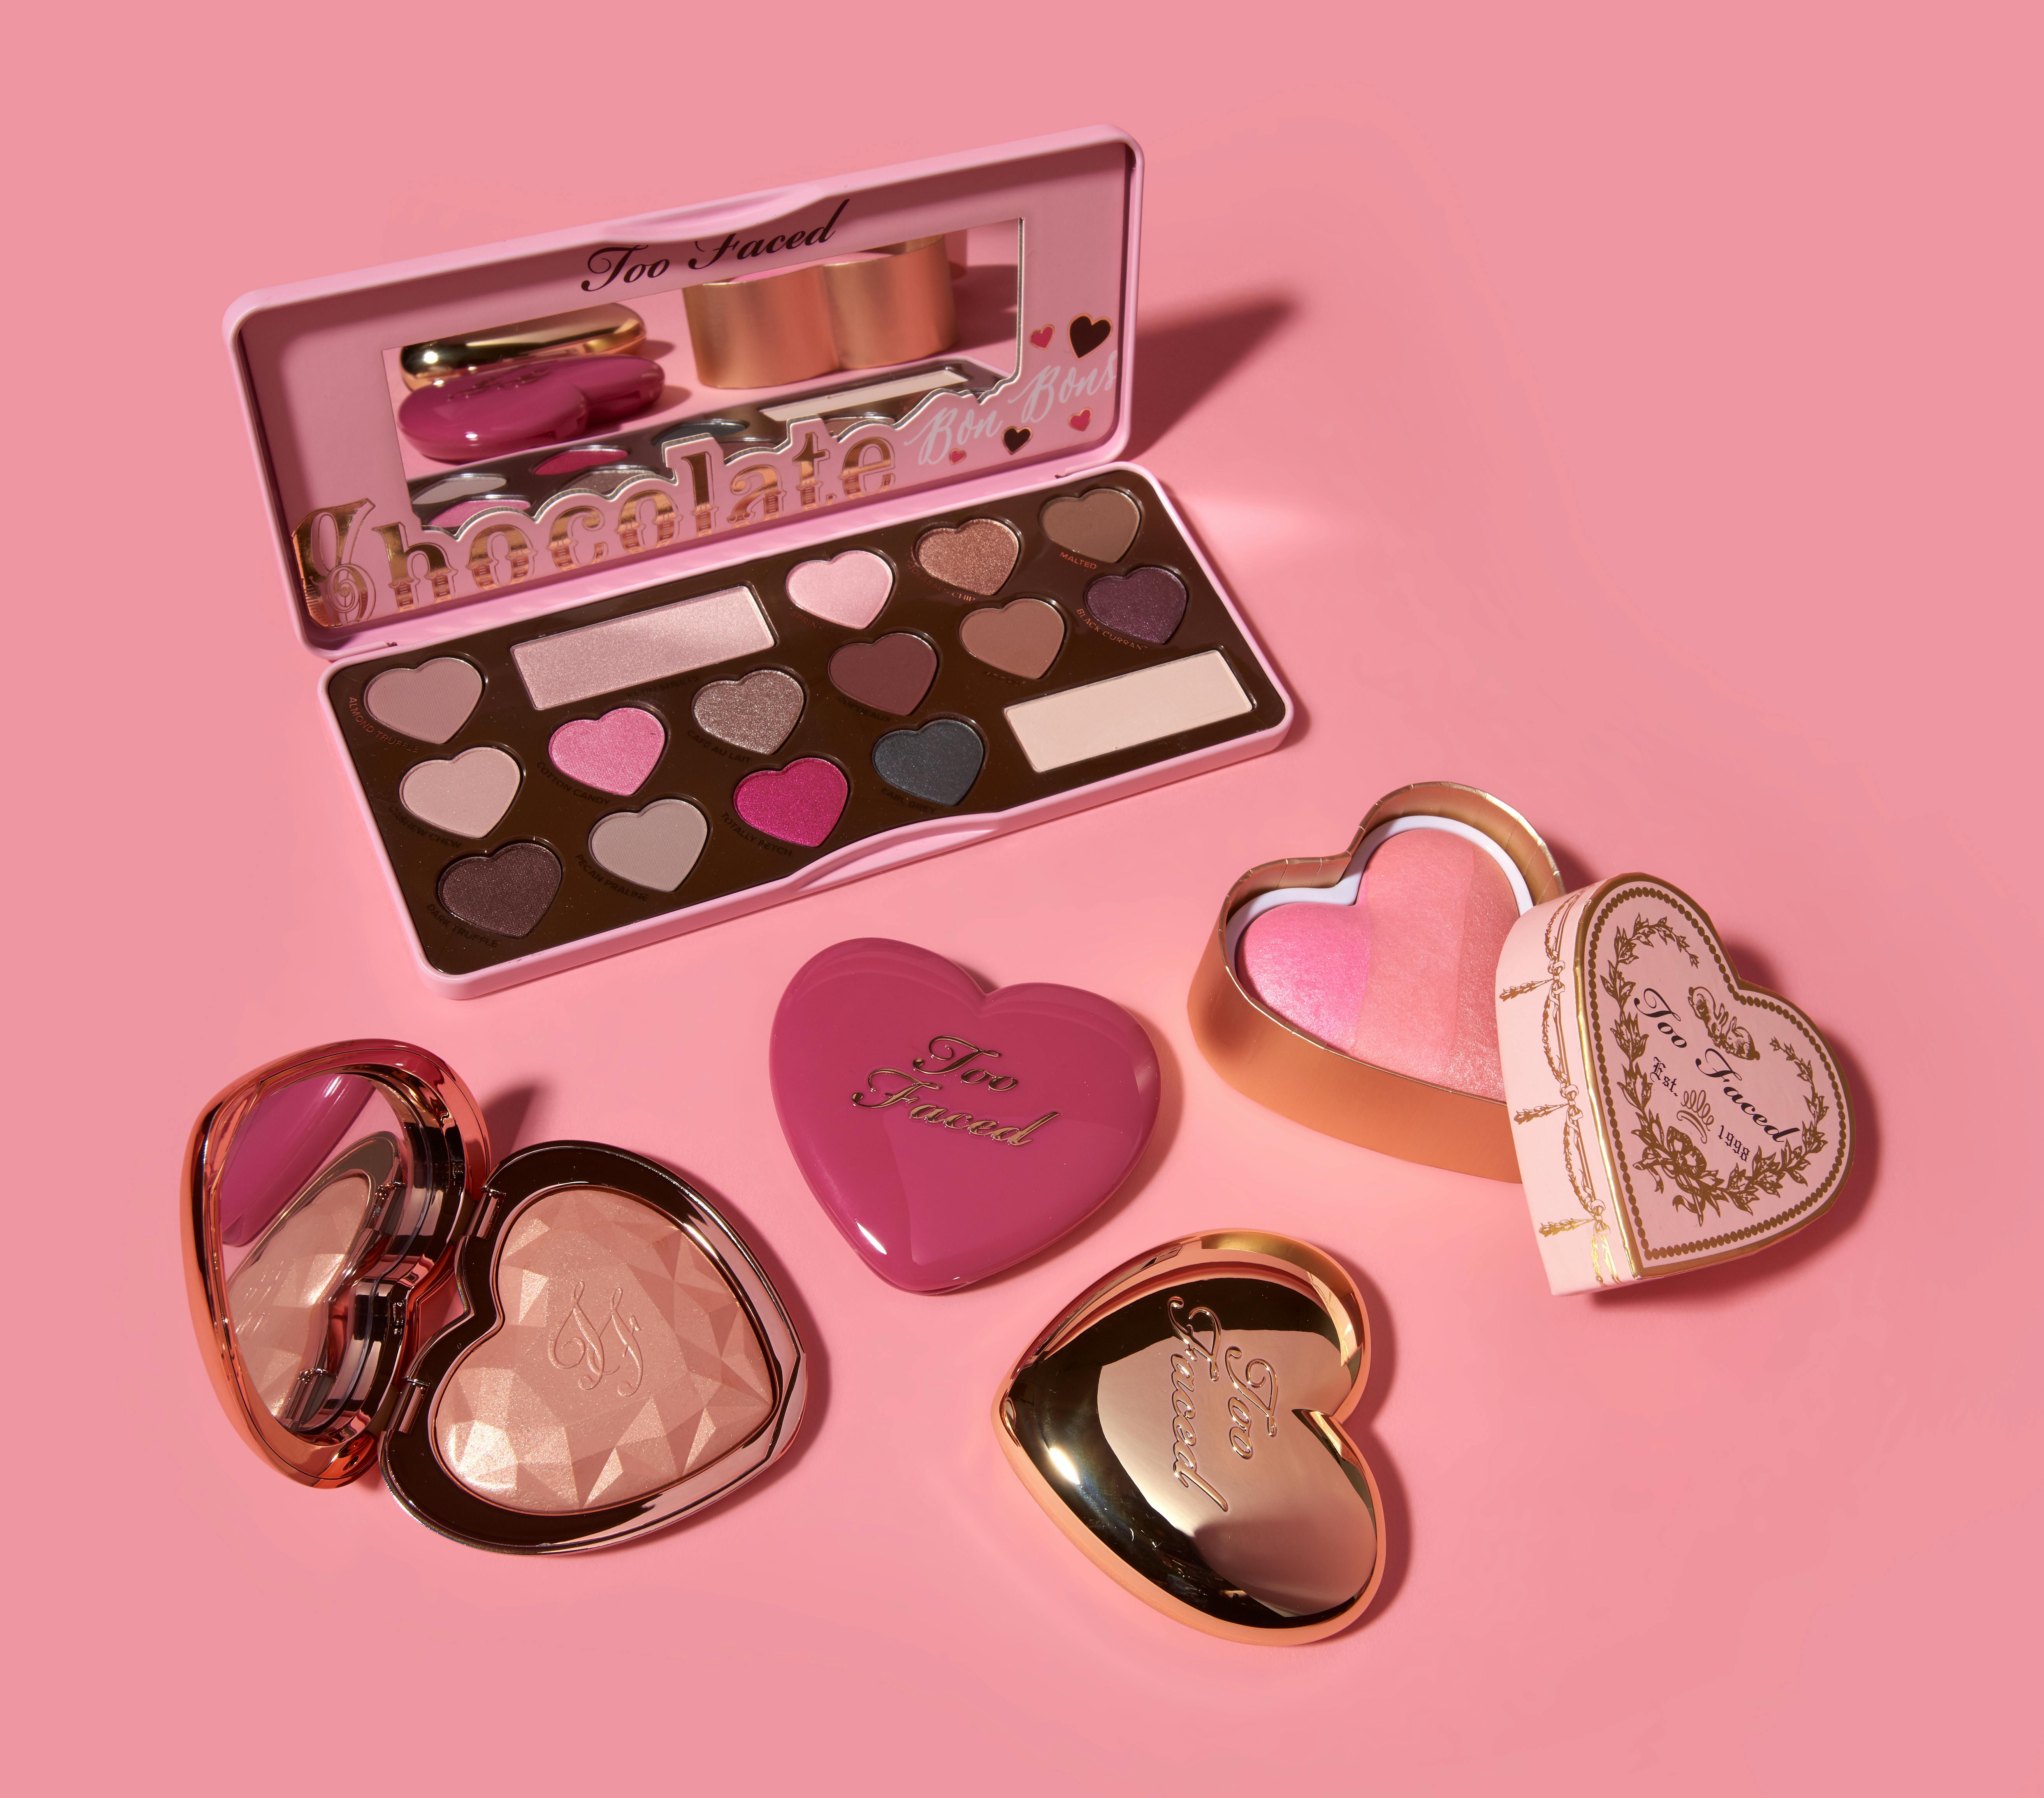 Heart Shape Empty Makeup Palette Case?Valentine Colorful Palette